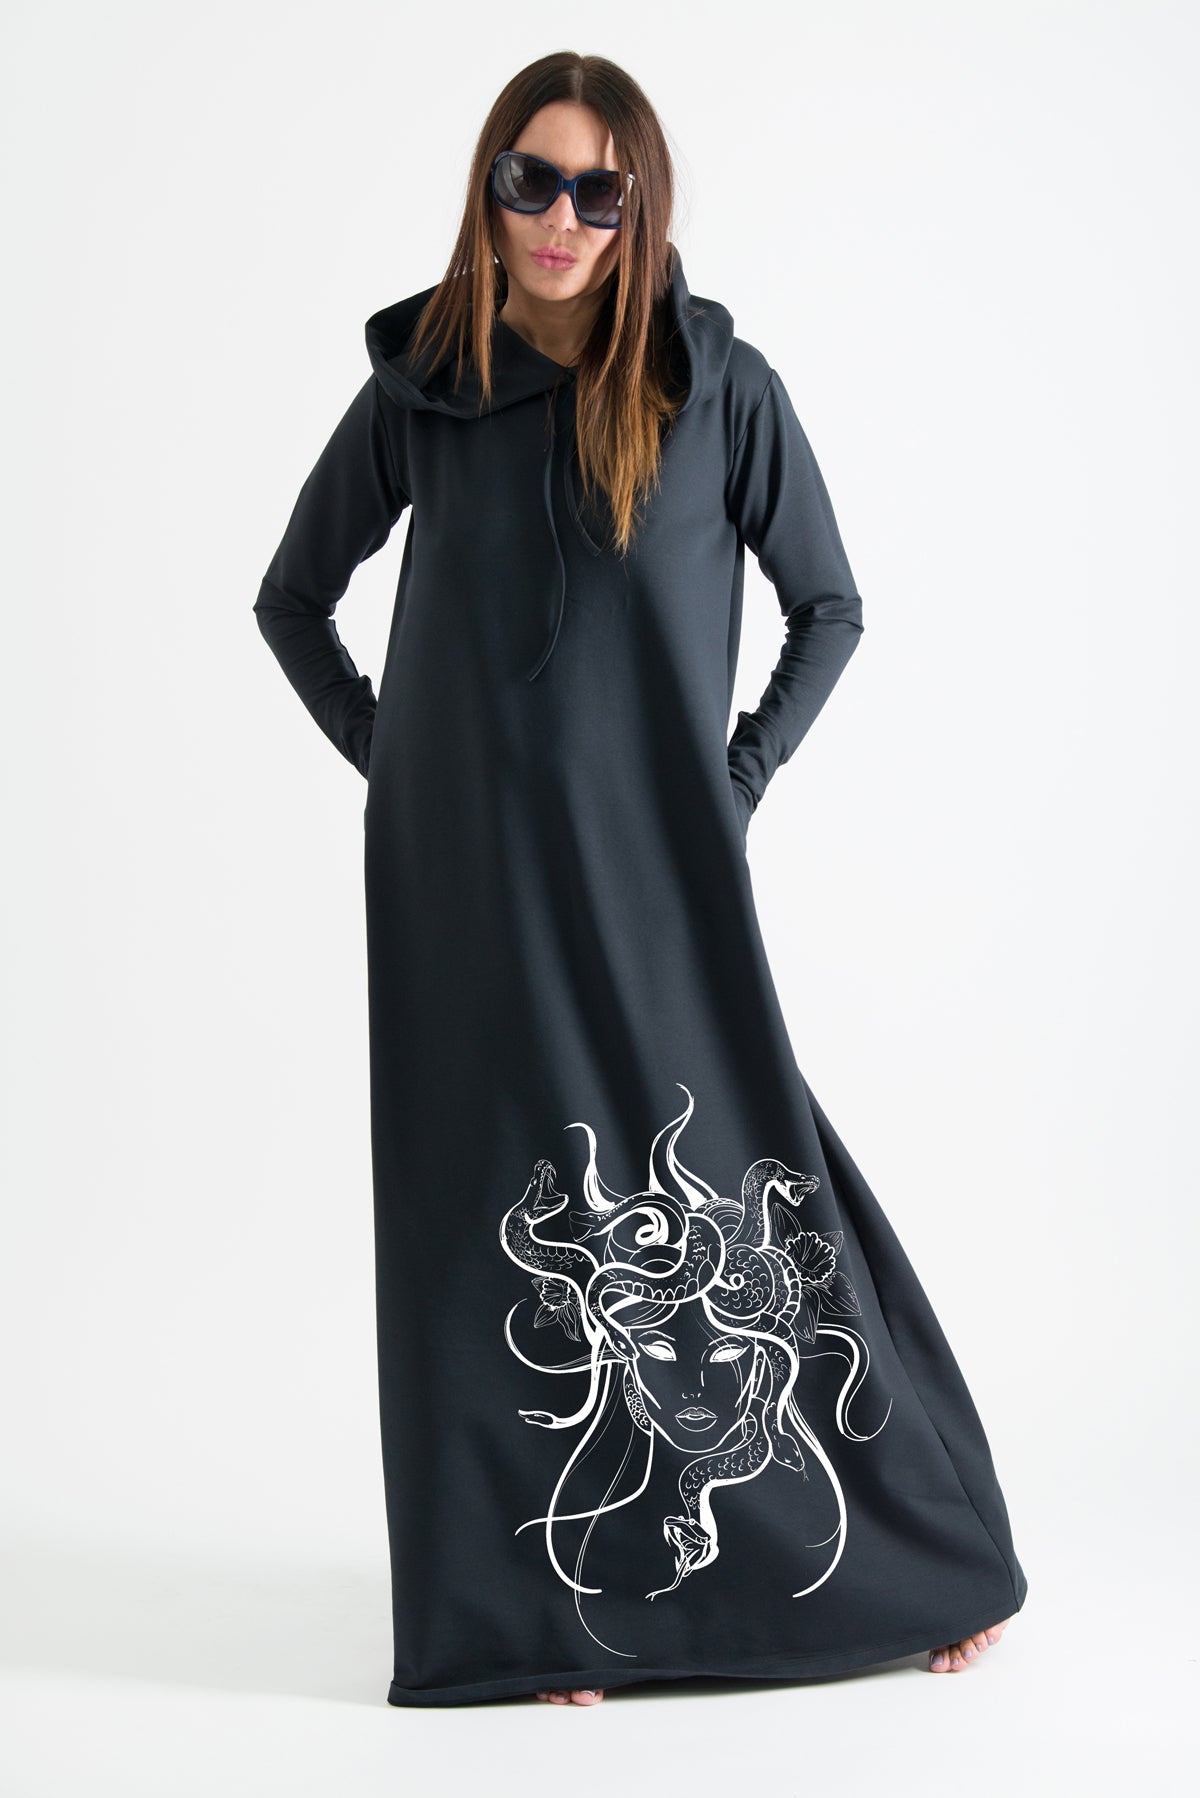 Hooded Octopus Printed Dress TINA EugFashion 